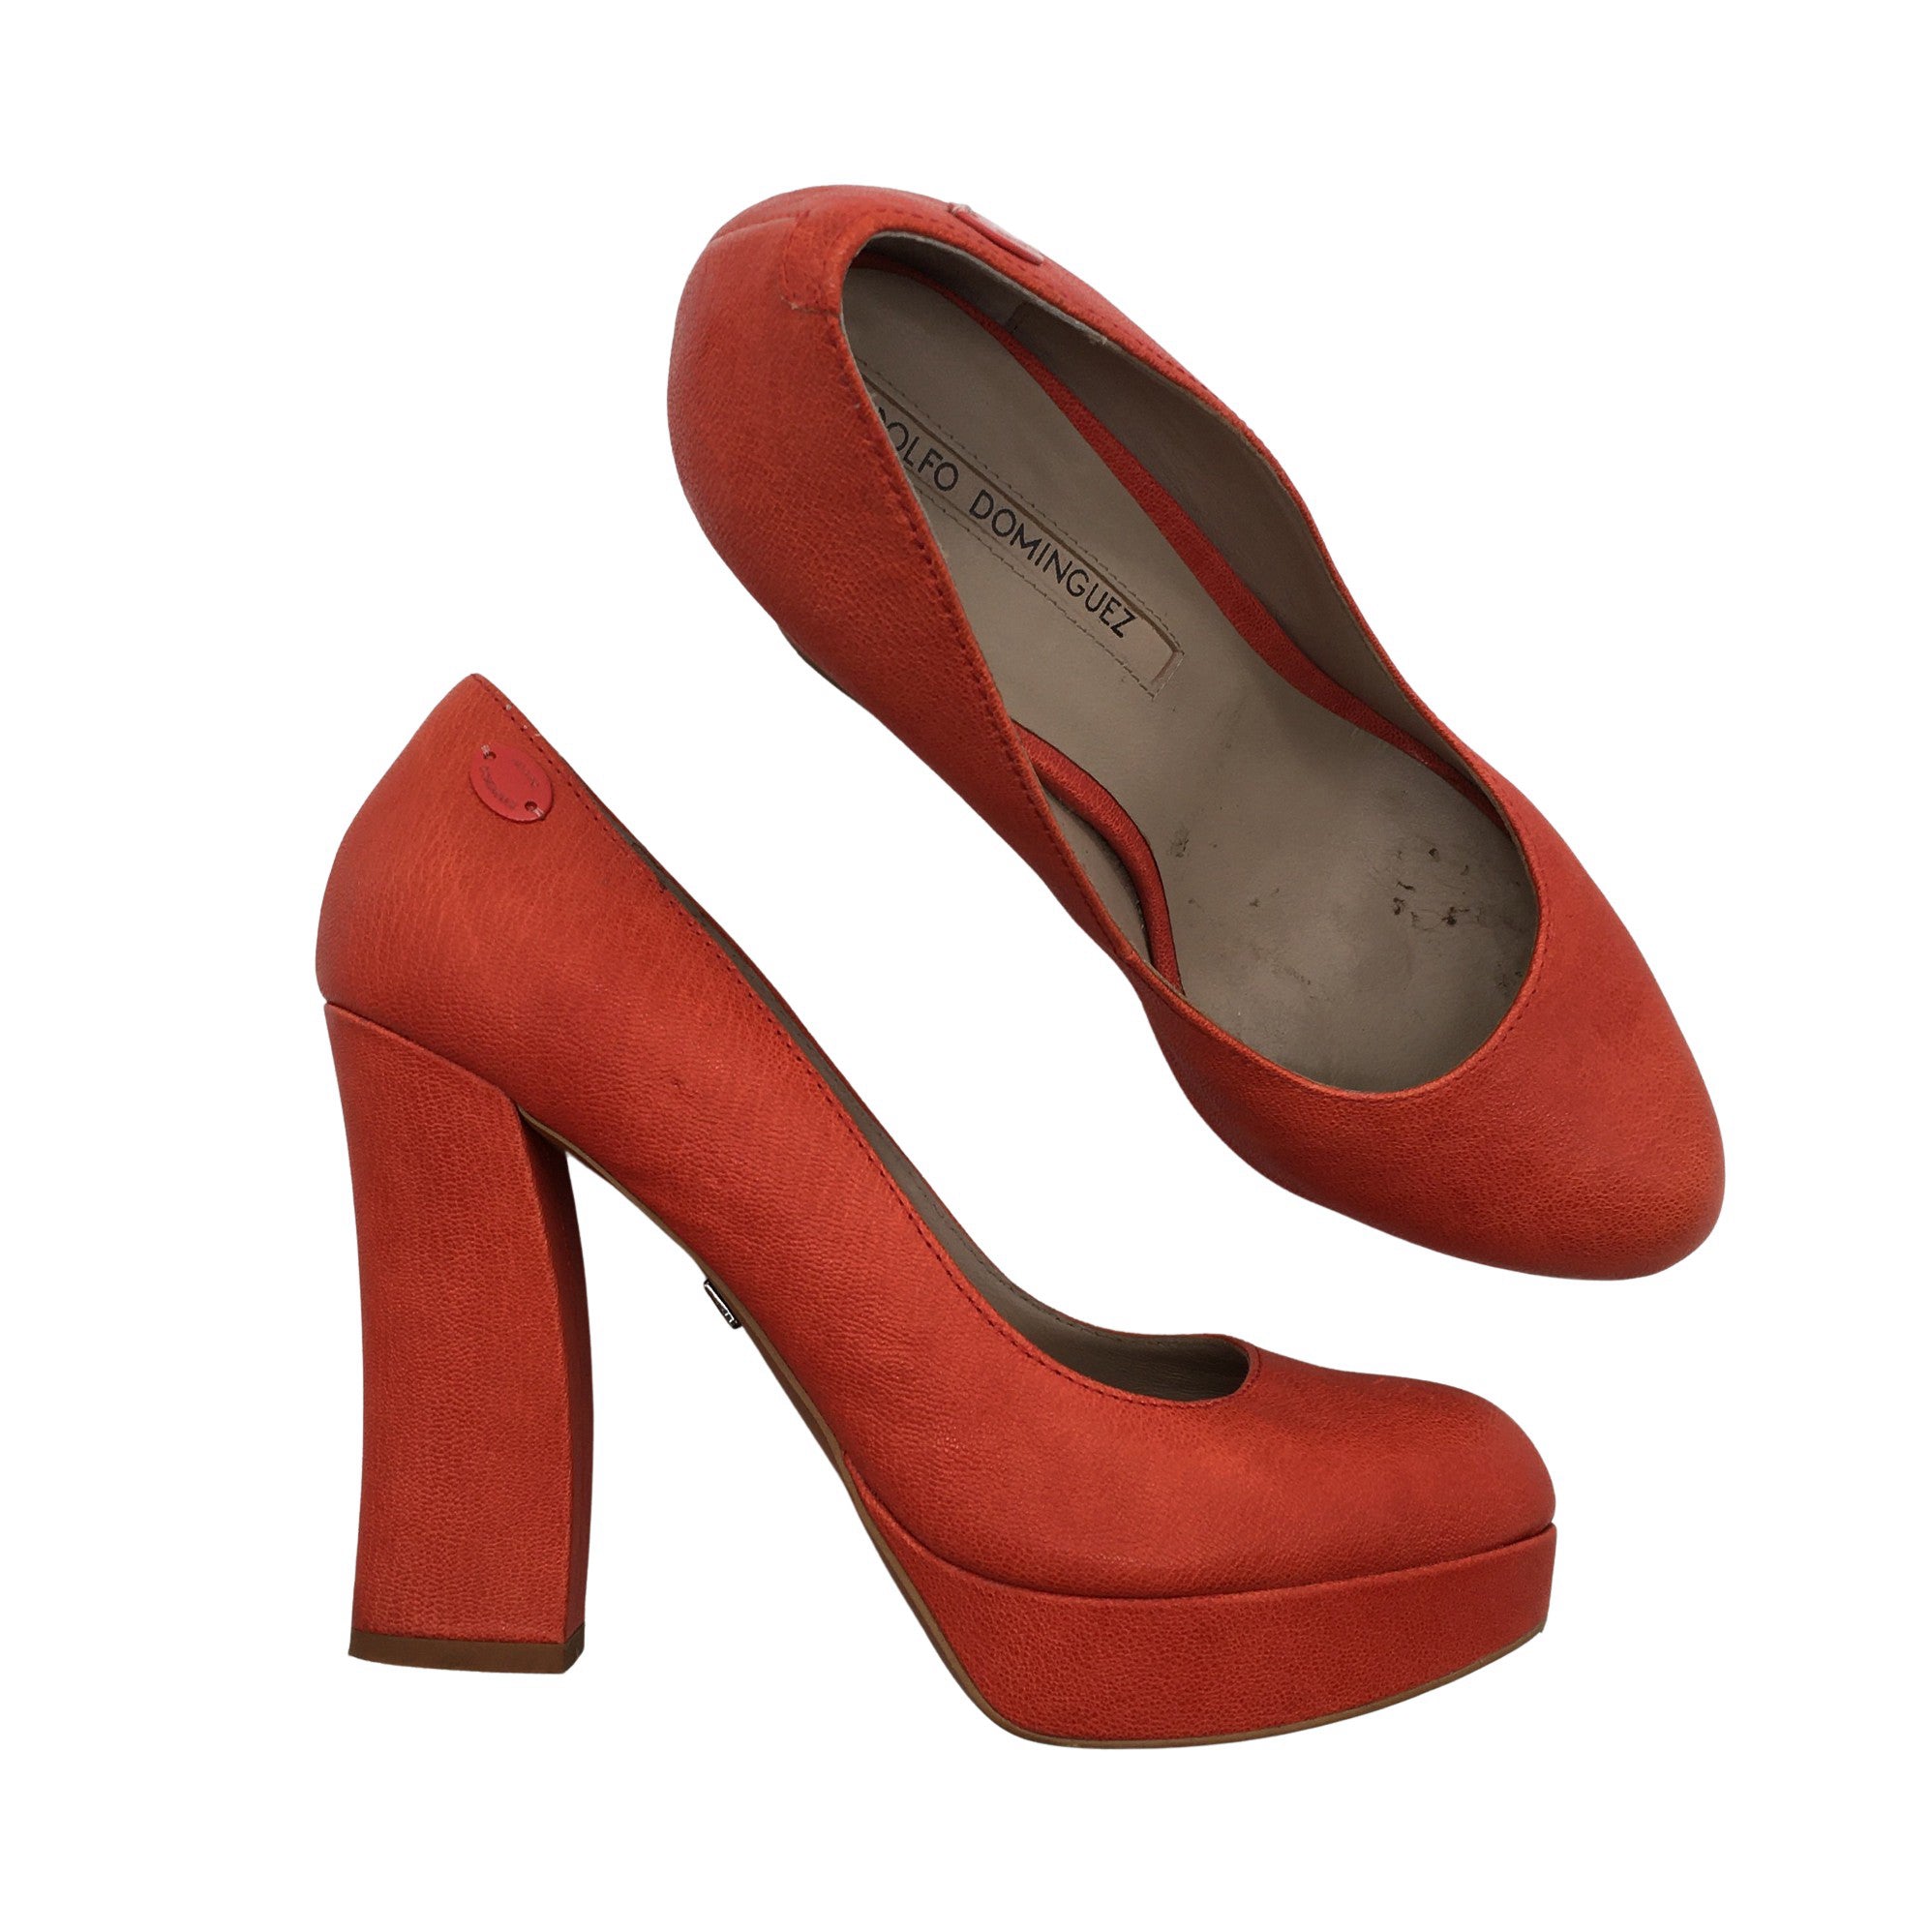 Women's Adolfo Dominguez High heels, size 40 (Orange) | Emmy